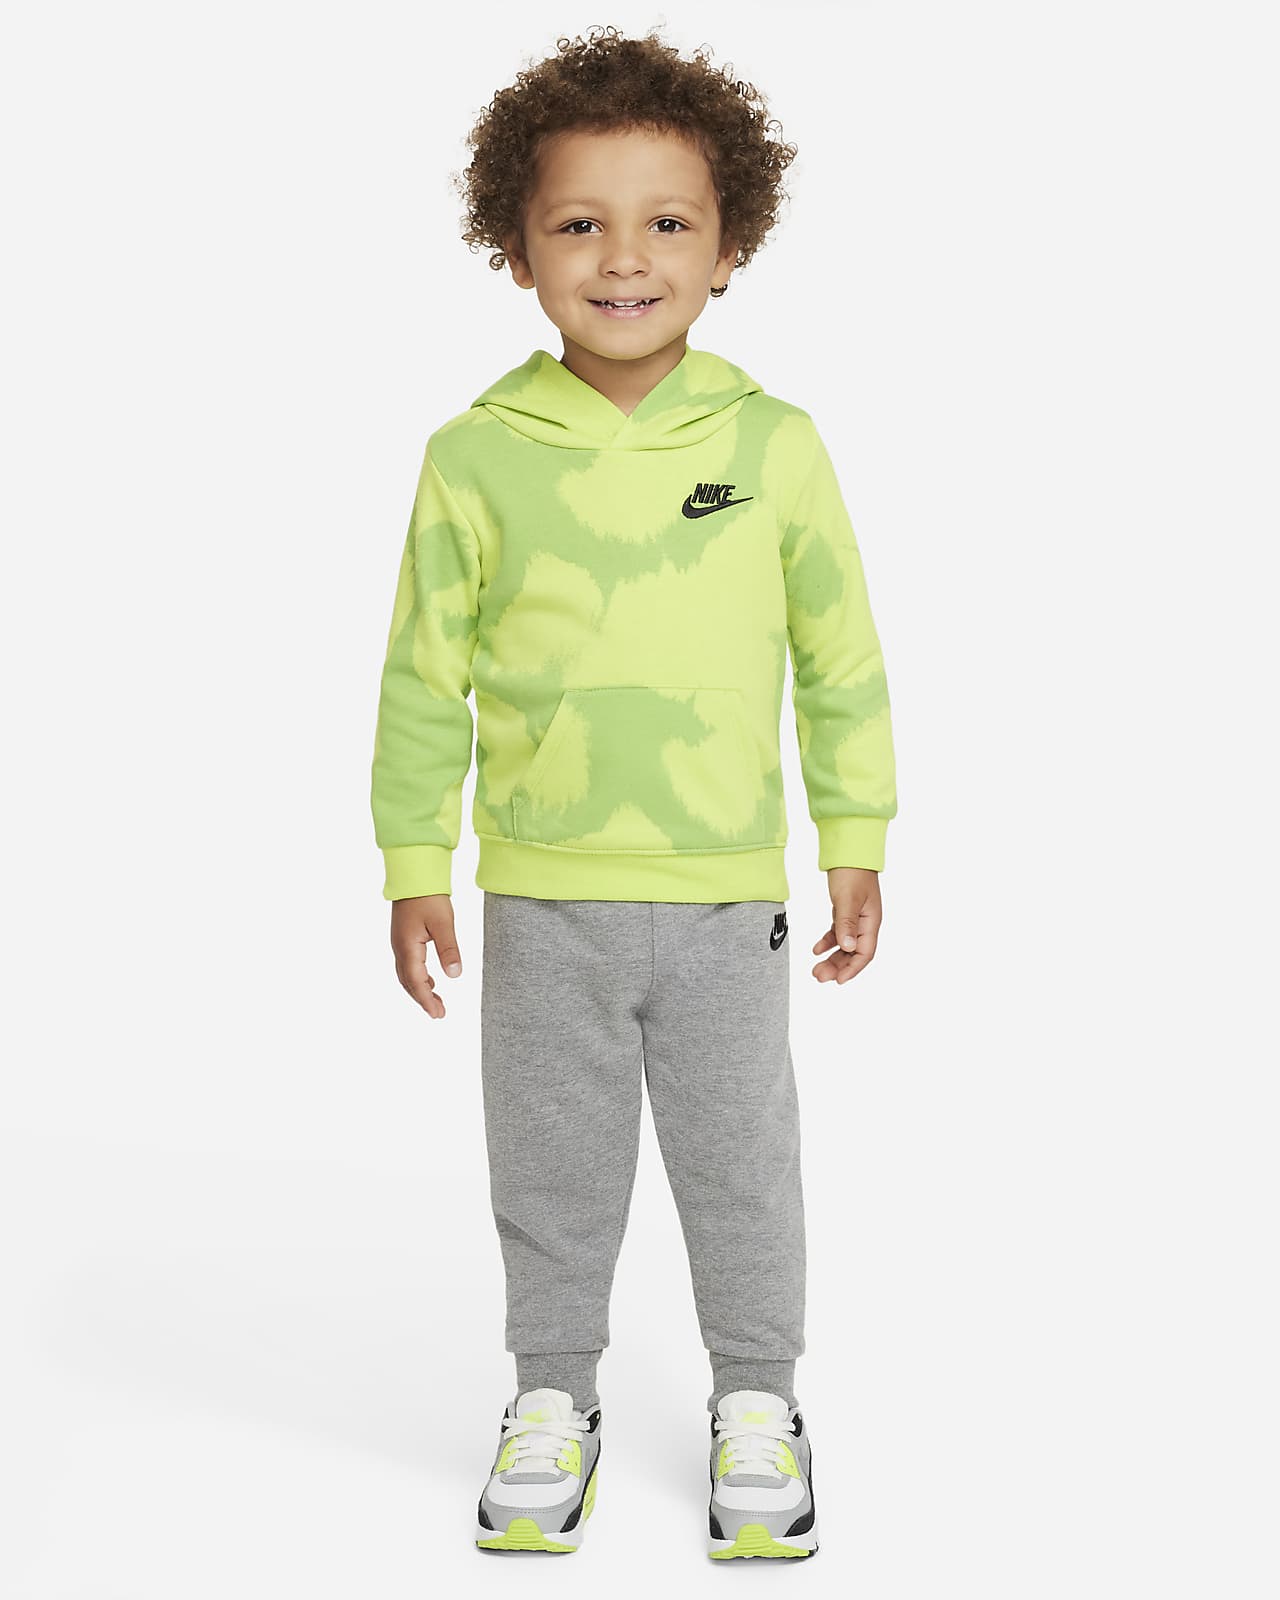 Nike Baby (12-24M) Hoodie and Pants Set